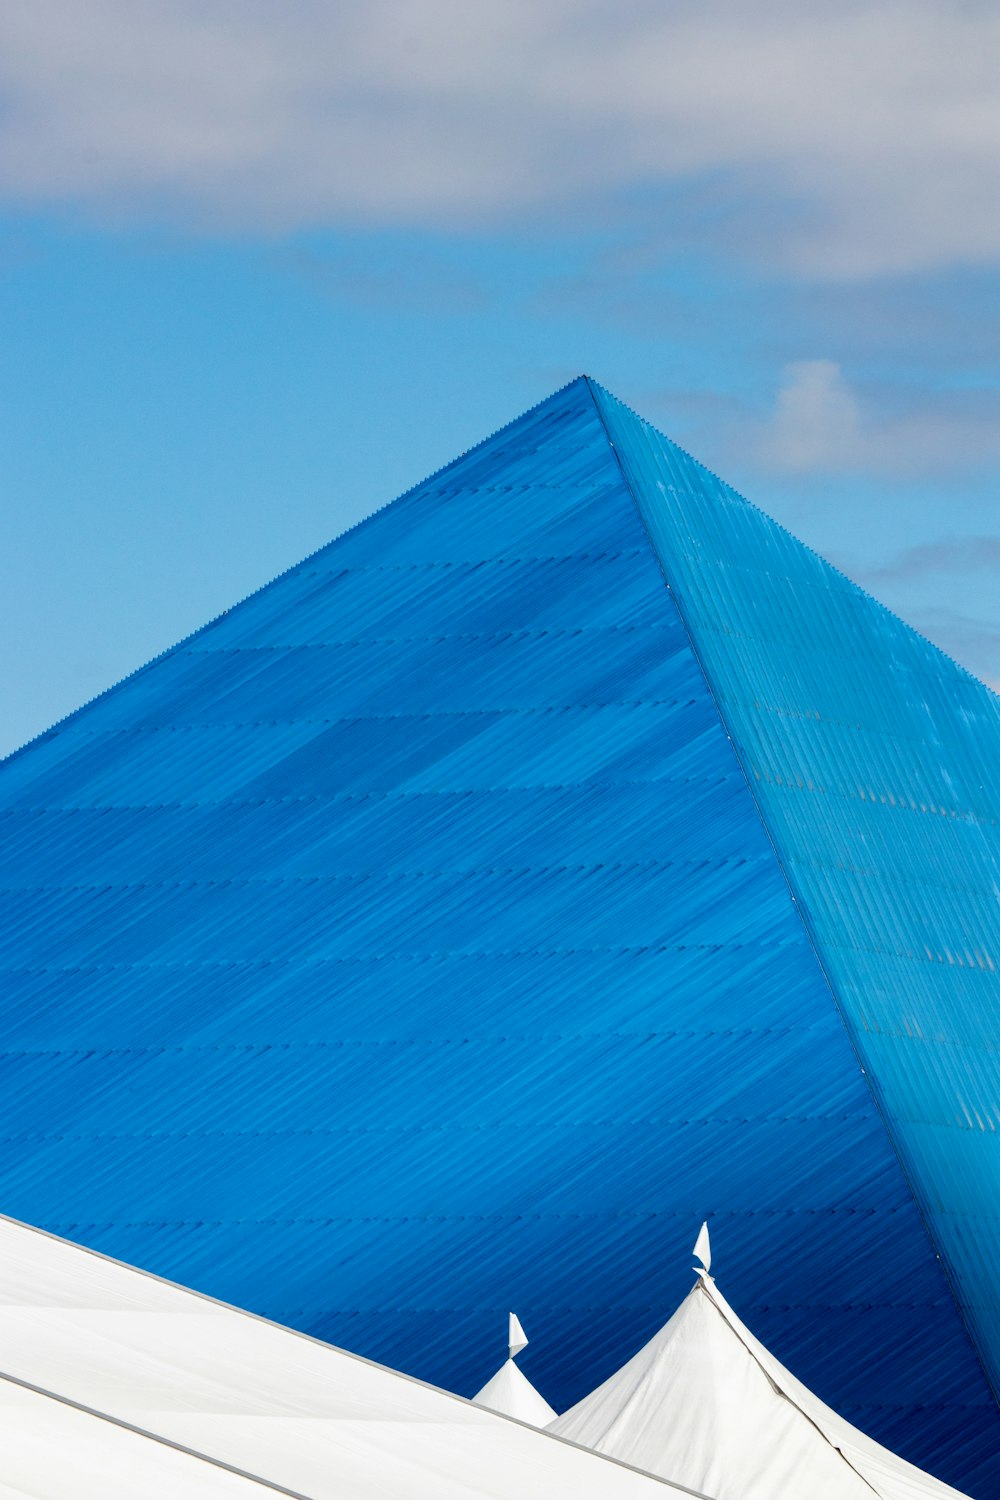 Punto di riferimento della piramide blu